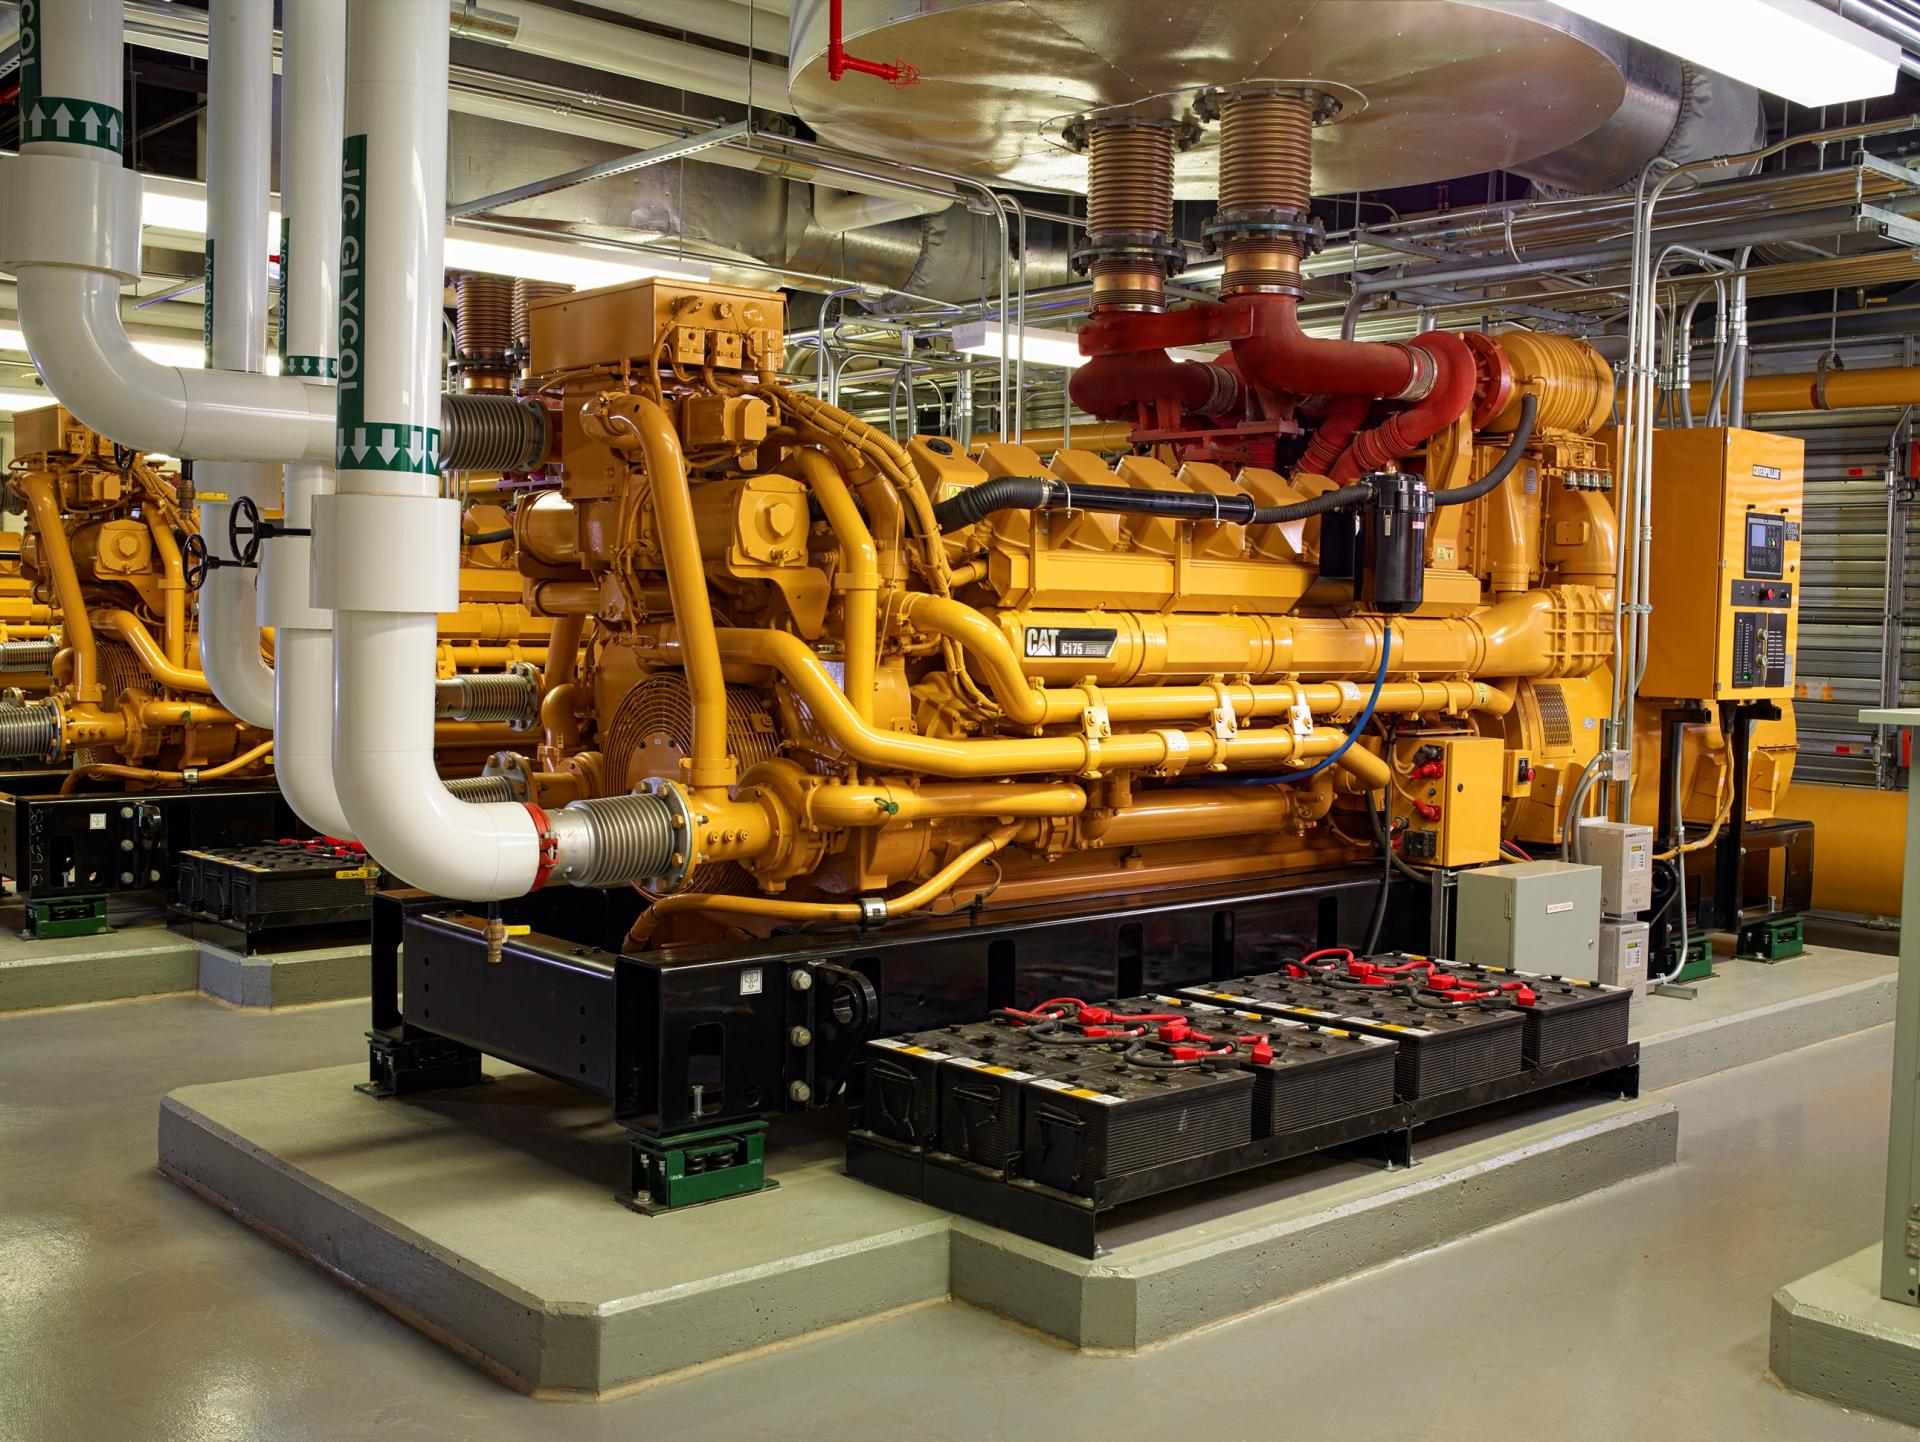 Generators located within interior plant utilize remote radiators